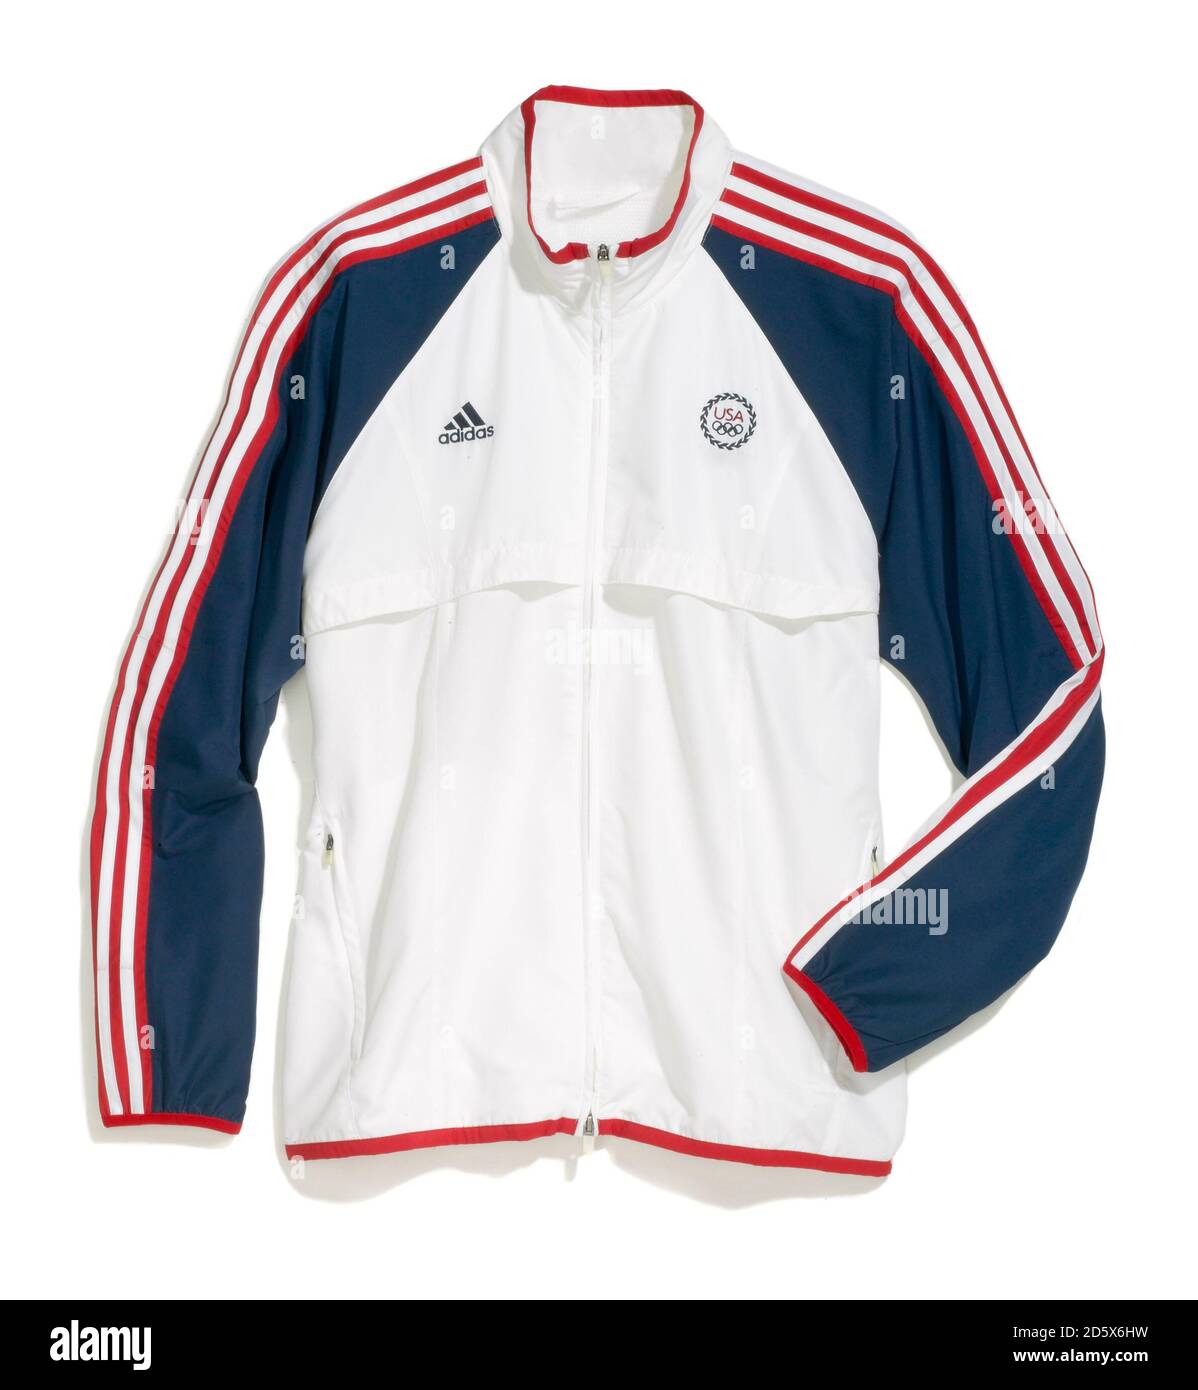 Veste olympique zippée rouge, blanche et bleue imperméable d'Adidas photographiée sur fond blanc Banque D'Images